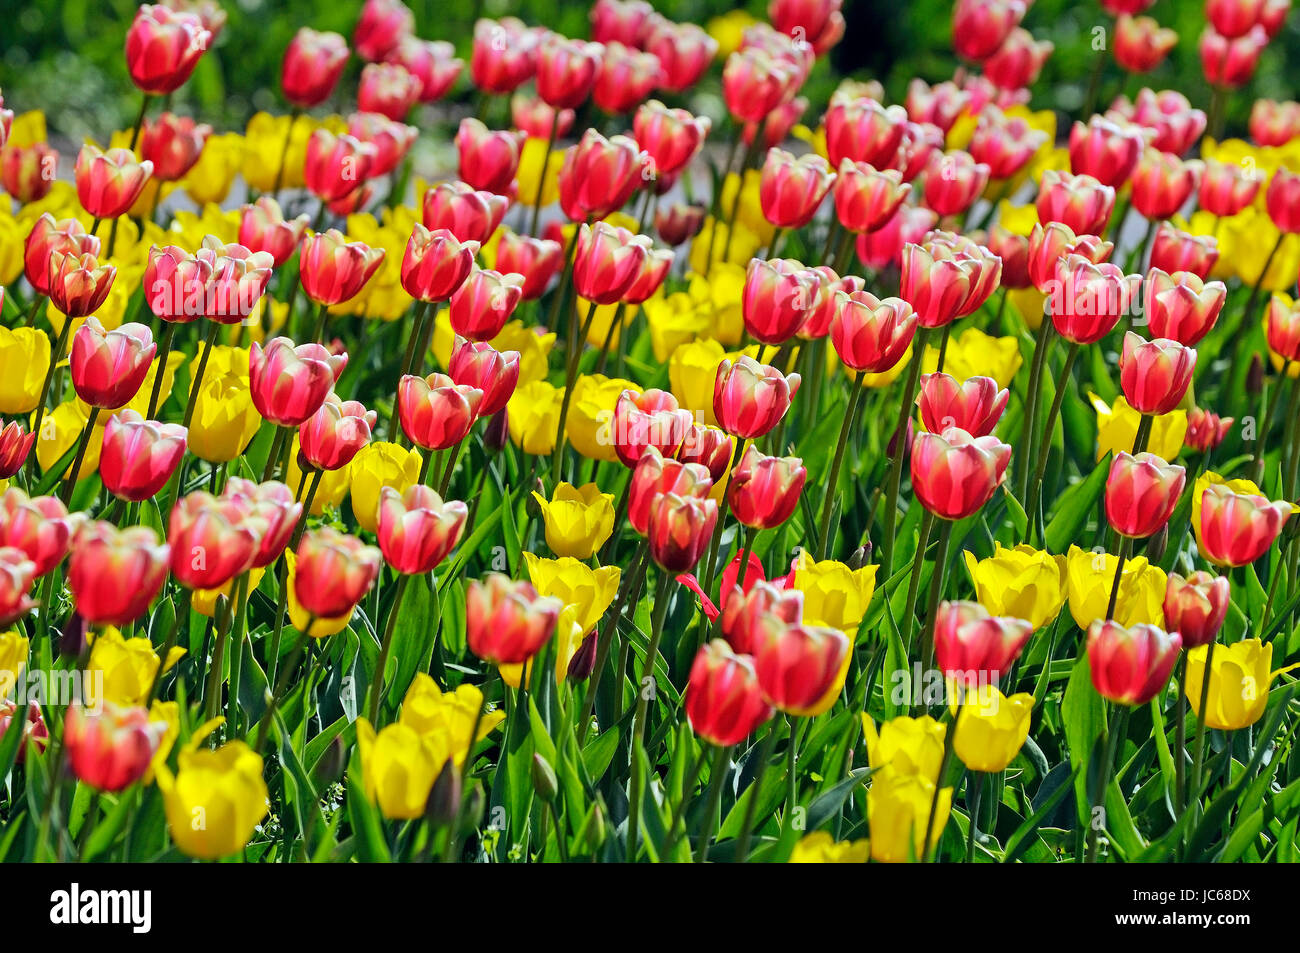 Tulipes rouges et jaunes, Tulipa spp. - Champ de tulipes, Rote und gelbe Tulpen, Tulipa spp. - Tulpenfeld Banque D'Images